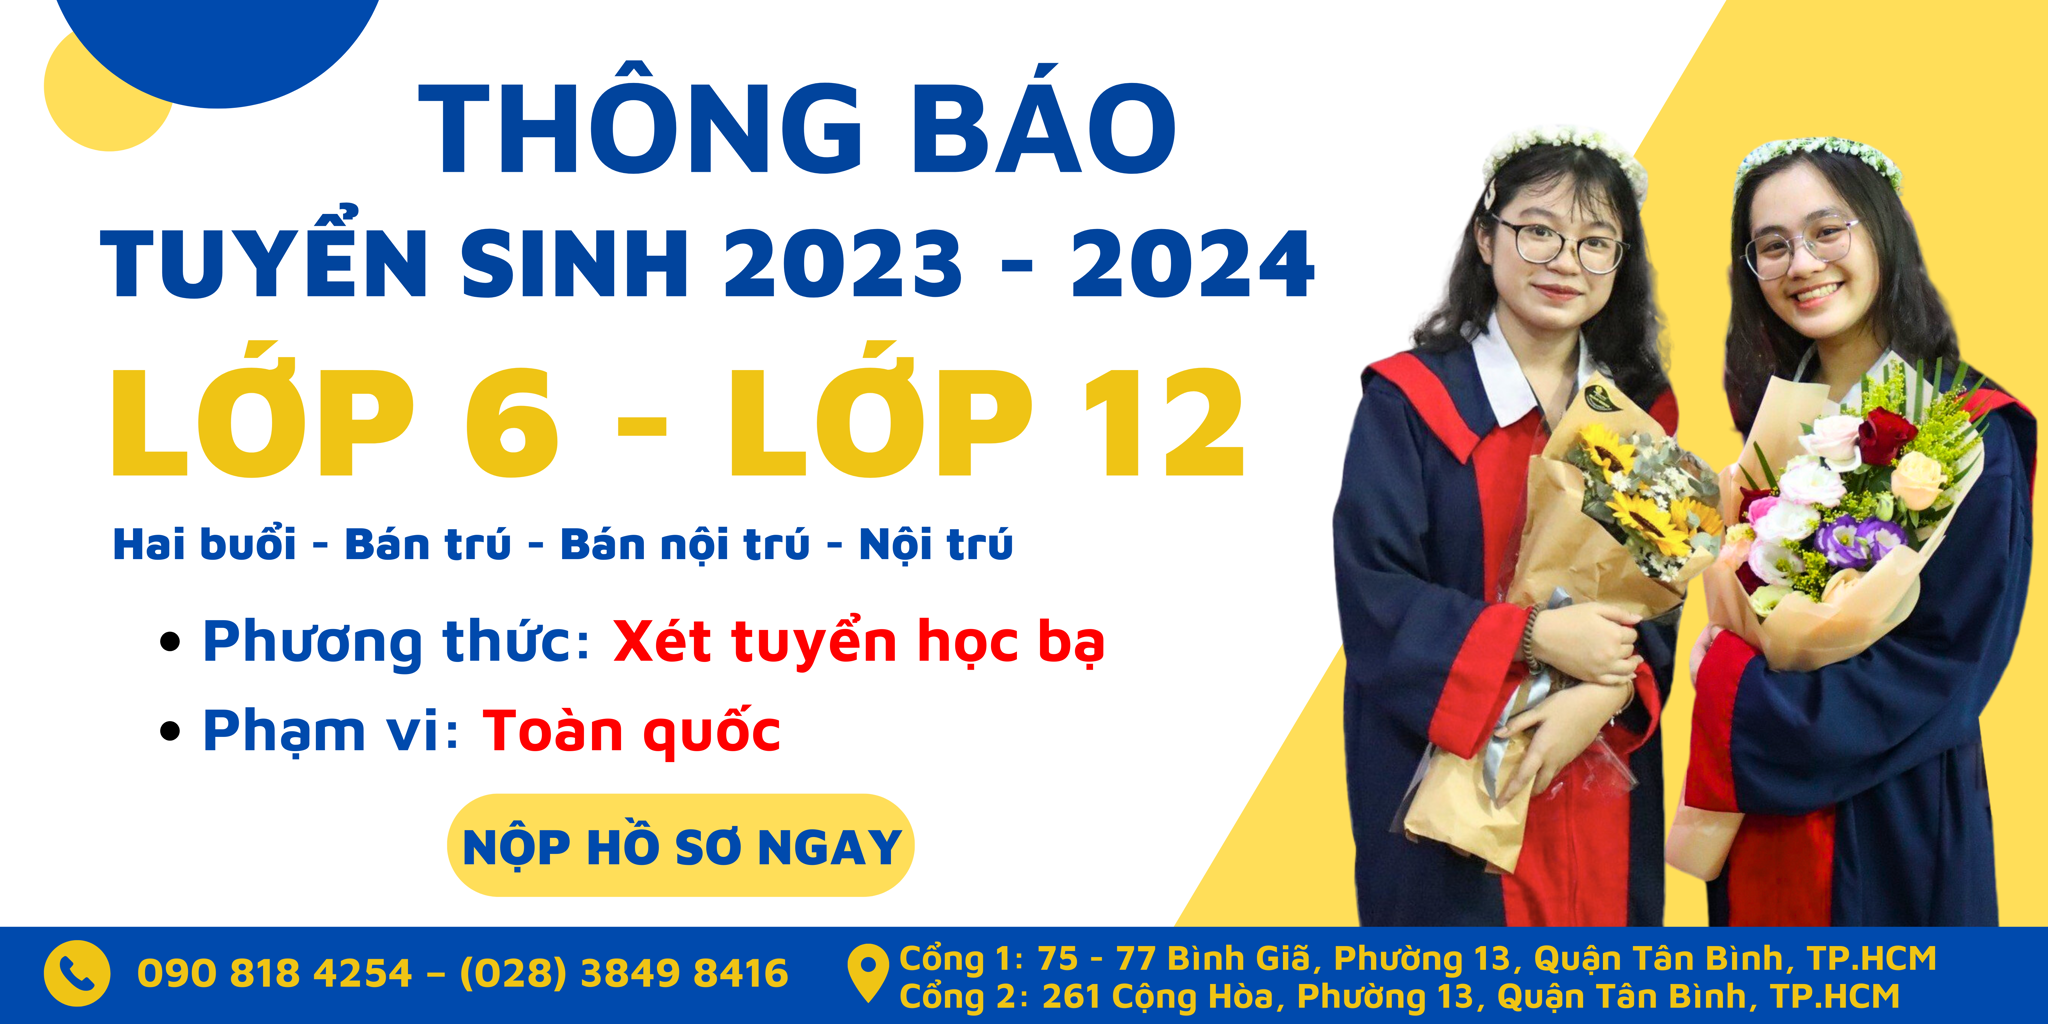 THÔNG TIN TUYỂN SINH NĂM 2023 – 2024 THCS & THPT VIỆT THANH